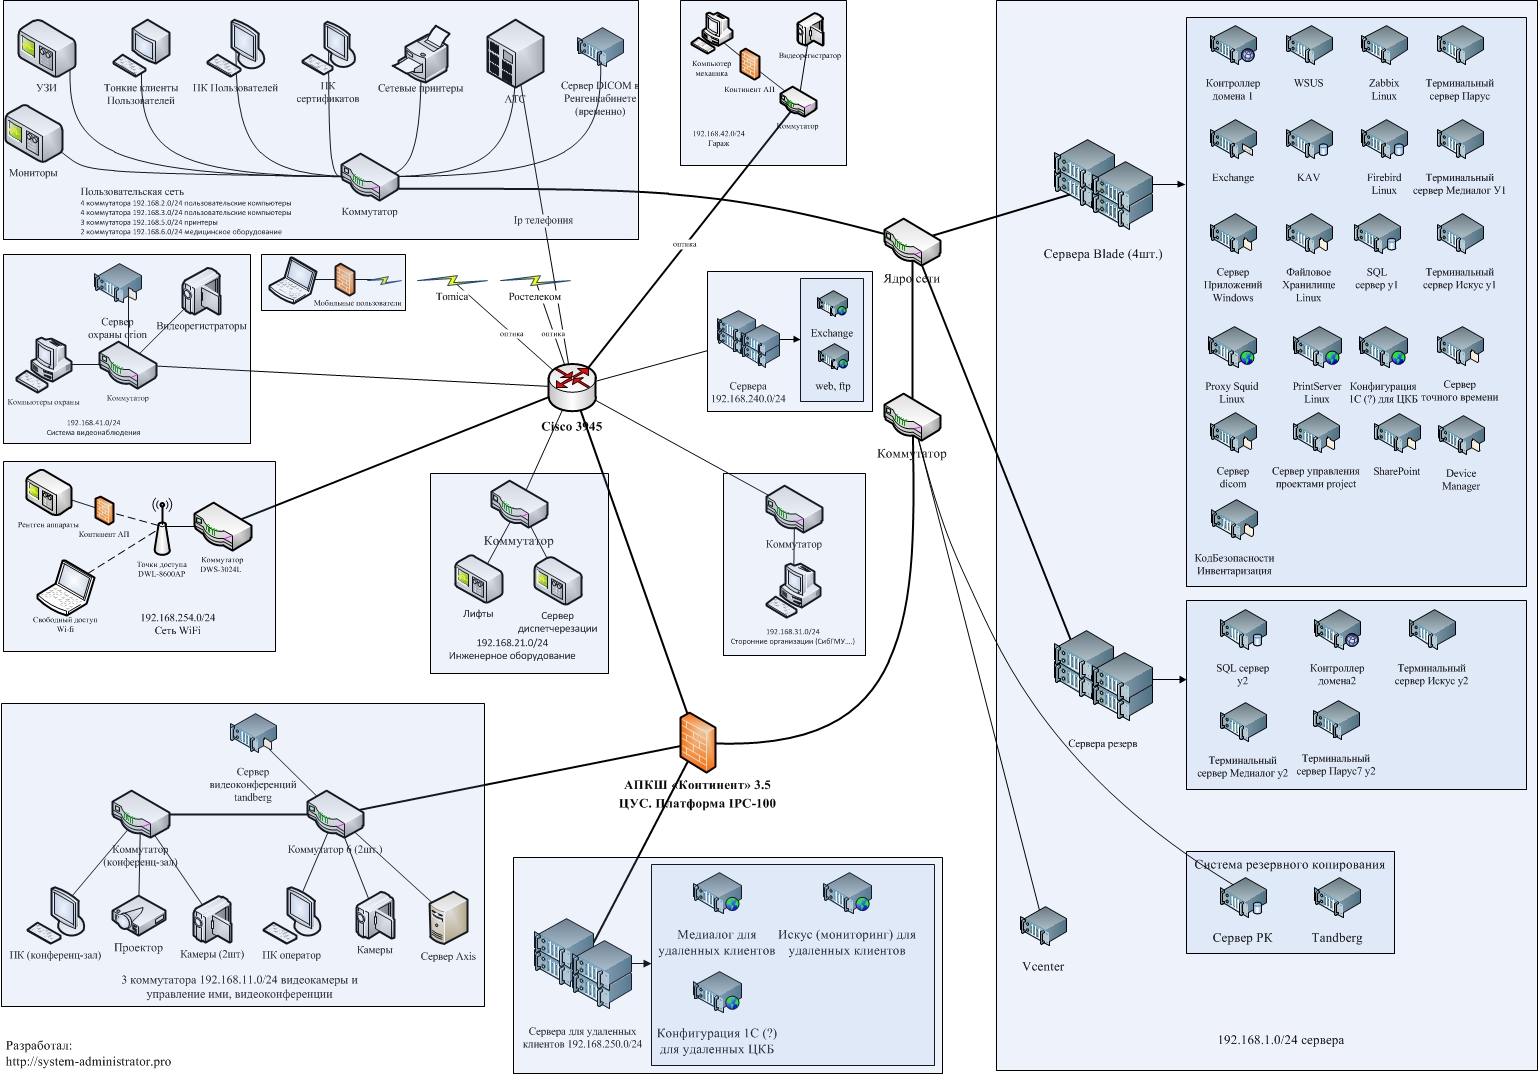 Реферат: Разработка схемы топологии локальной корпоративной сети, описание ее технических характеристик и решаемых задач